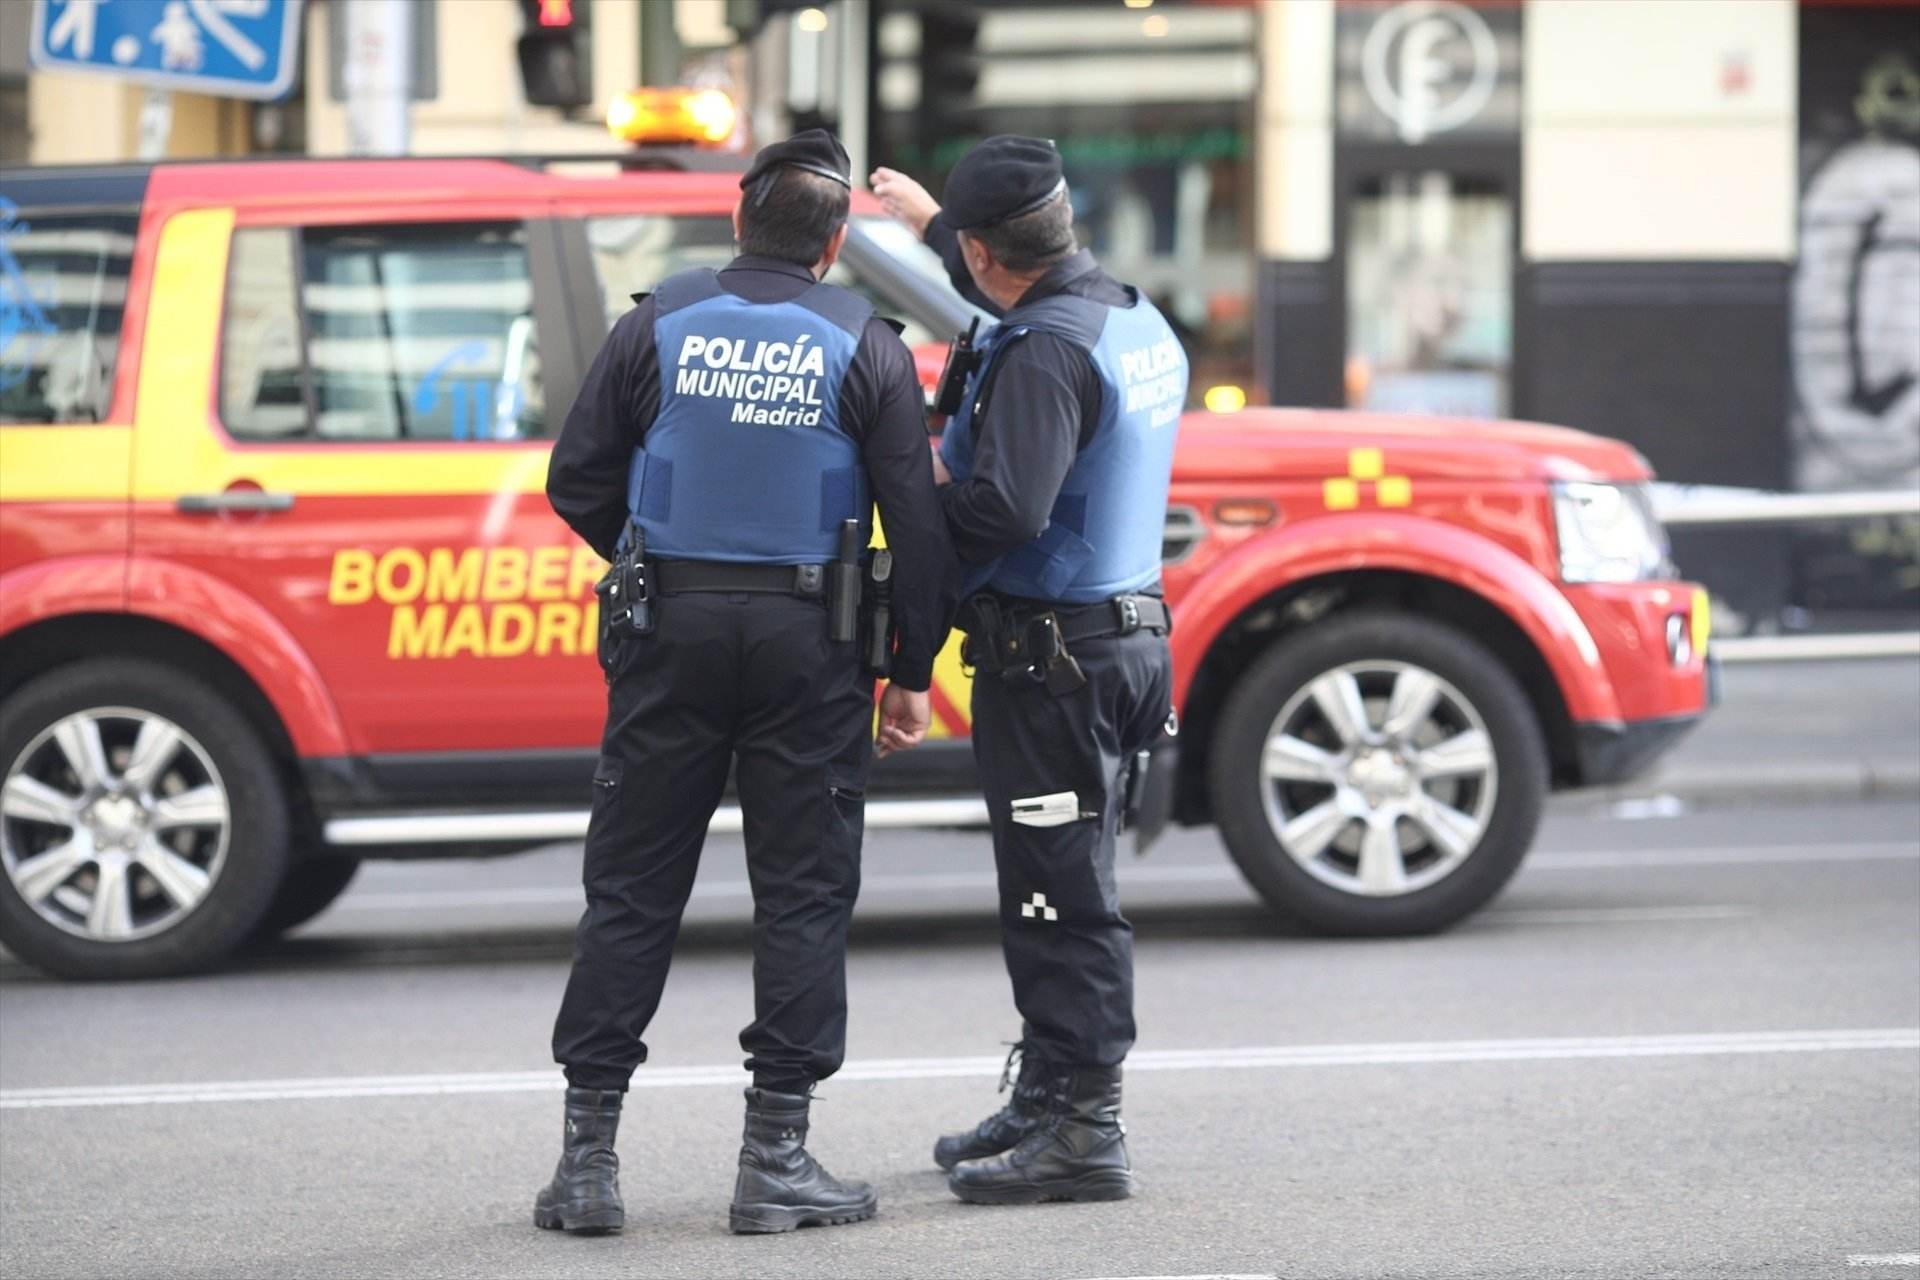 Policia Municipal de Madrid amb bombers en una imatge d'arxiu / EUROPA PRESS